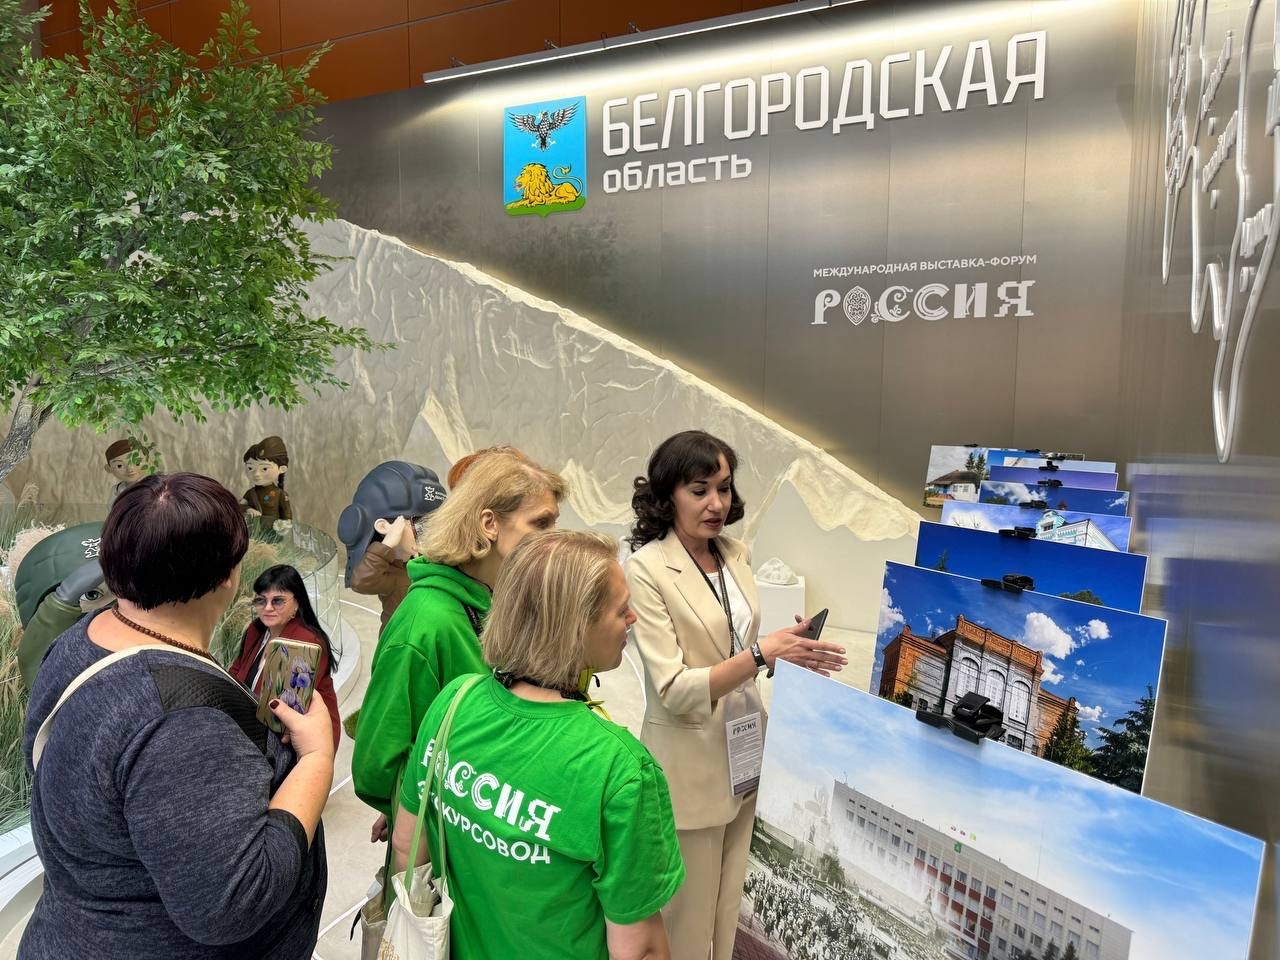 На стенде Белгородской области на Международной выставке-форуме «Россия» стартовала неделя Валуйского городского округа.